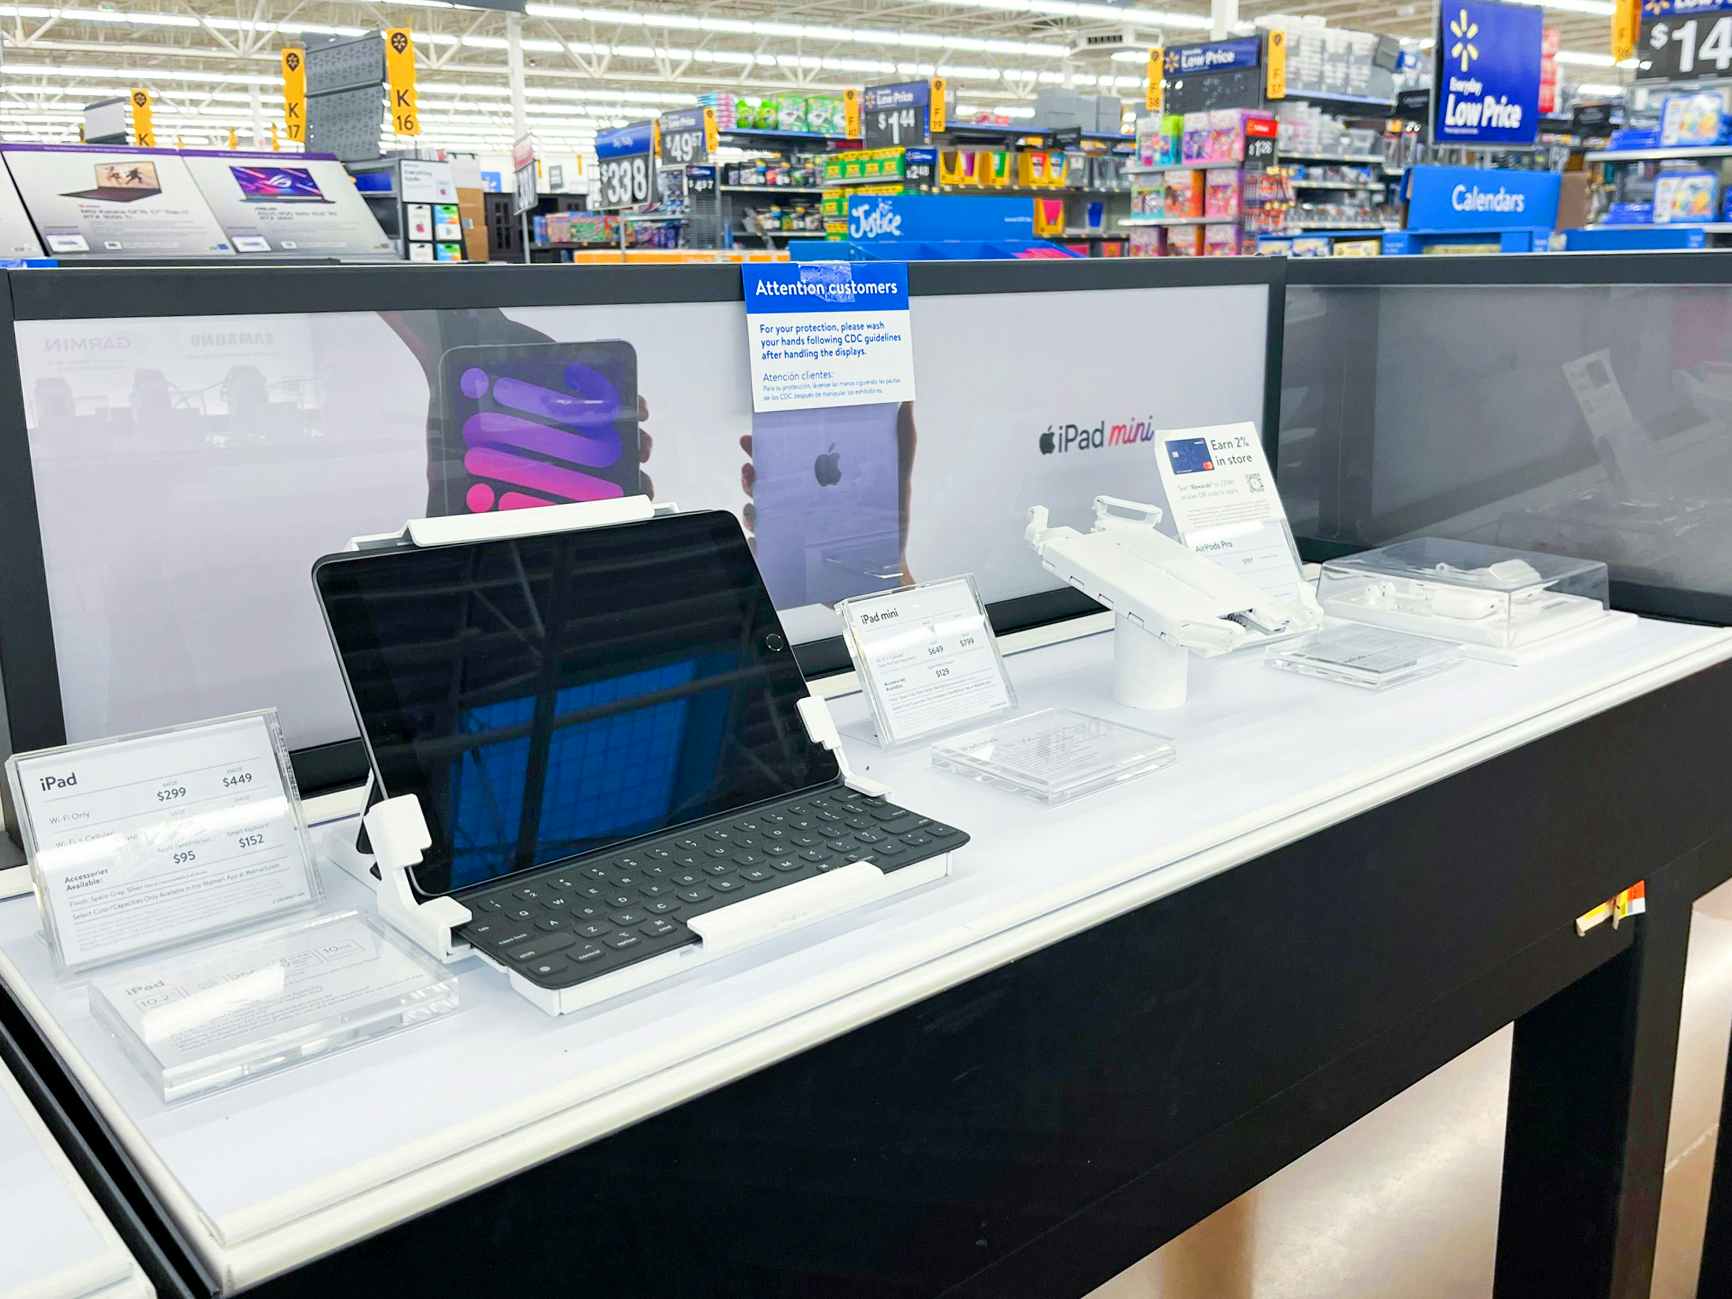 A display of Apple ipad products at Walmart